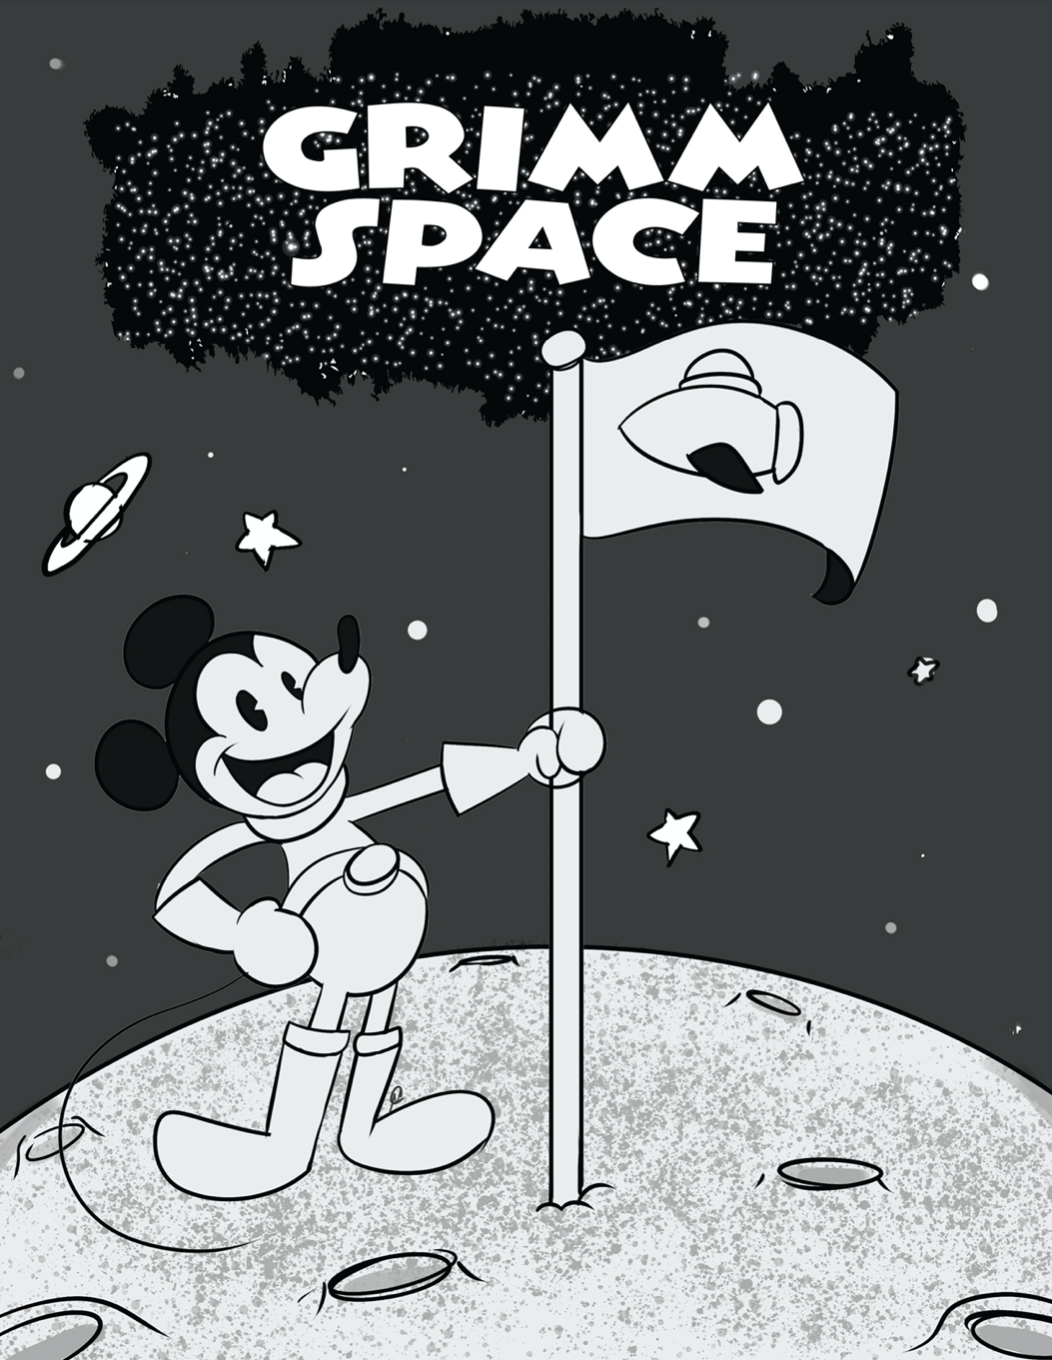 Grimm Space: Spaceship Willie